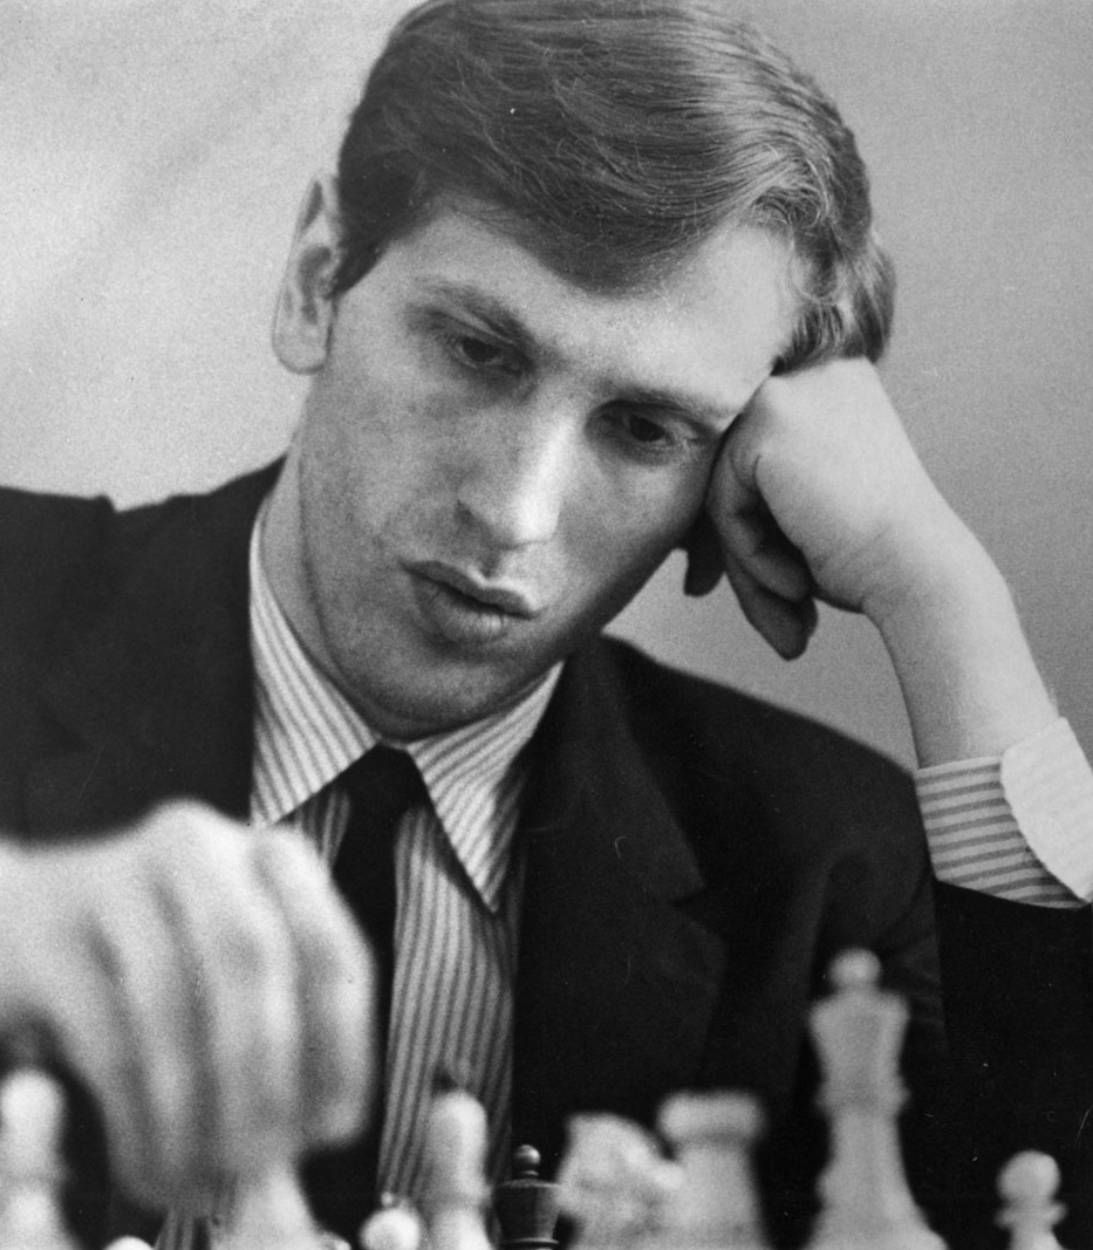 Фишер был крупным чемпионом по шахматам в 1960-х годах, выиграв титул в США, когда ему было всего 14 лет.